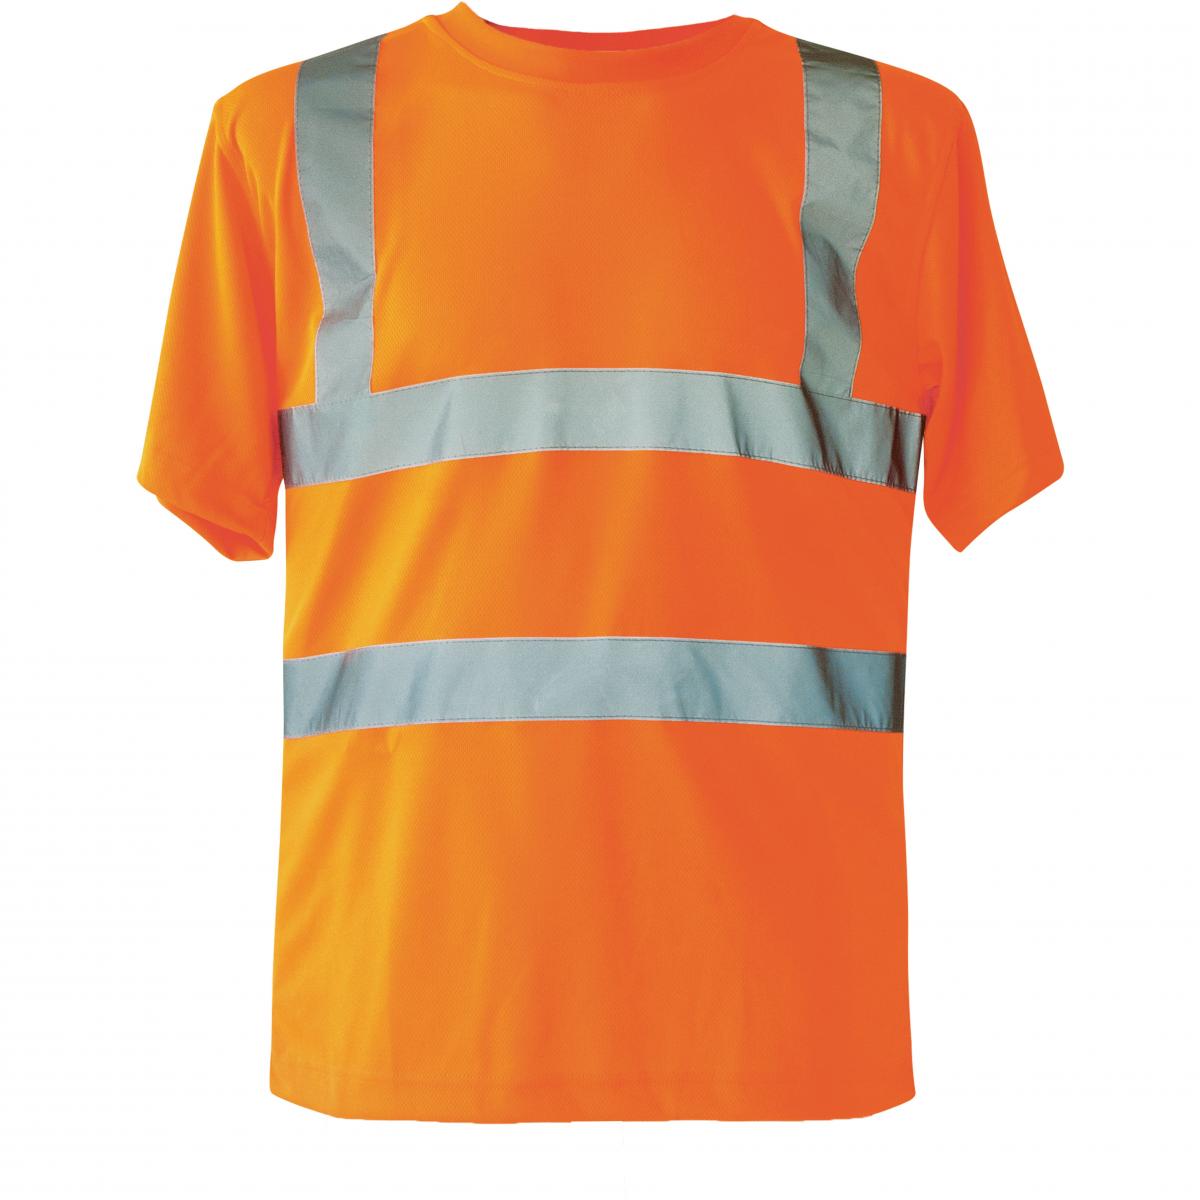 Hersteller: Korntex Herstellernummer: KXS Artikelbezeichnung: Herren Hi-Viz Workwear Arbeits T-Shirt EN ISO 20471 Farbe: Signal Orange